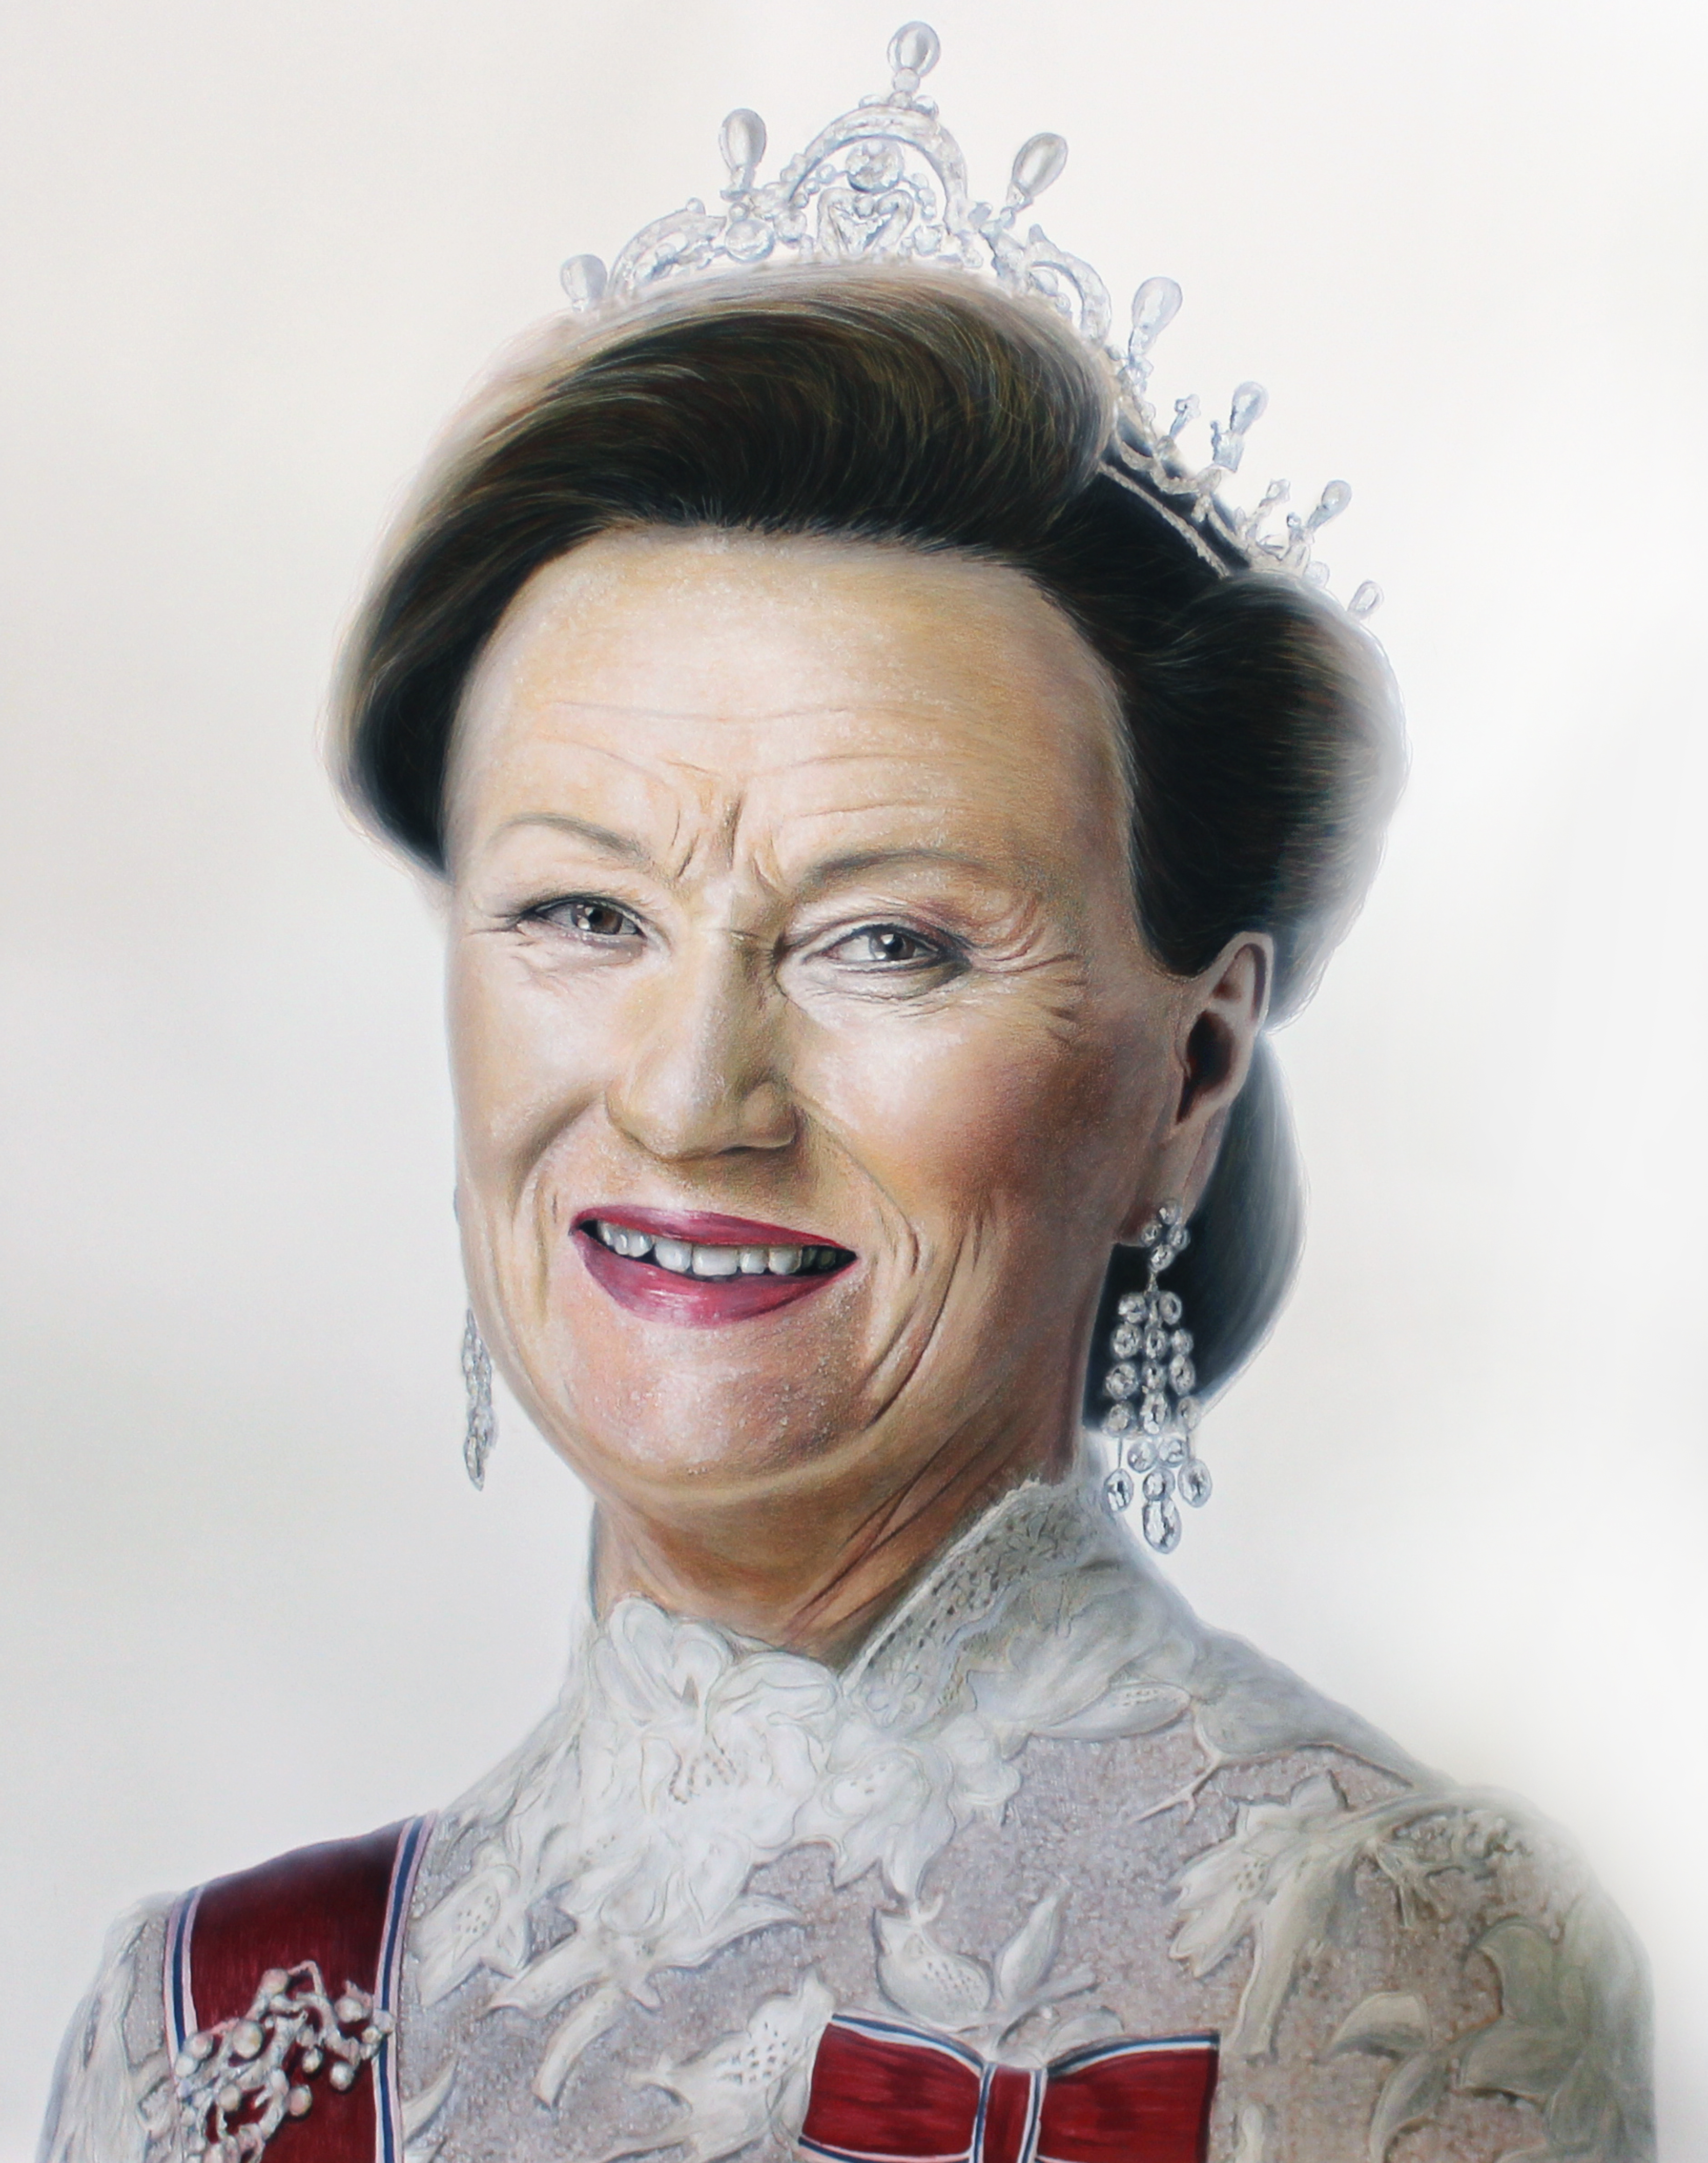 Queen Sonja Backgrounds on Wallpapers Vista